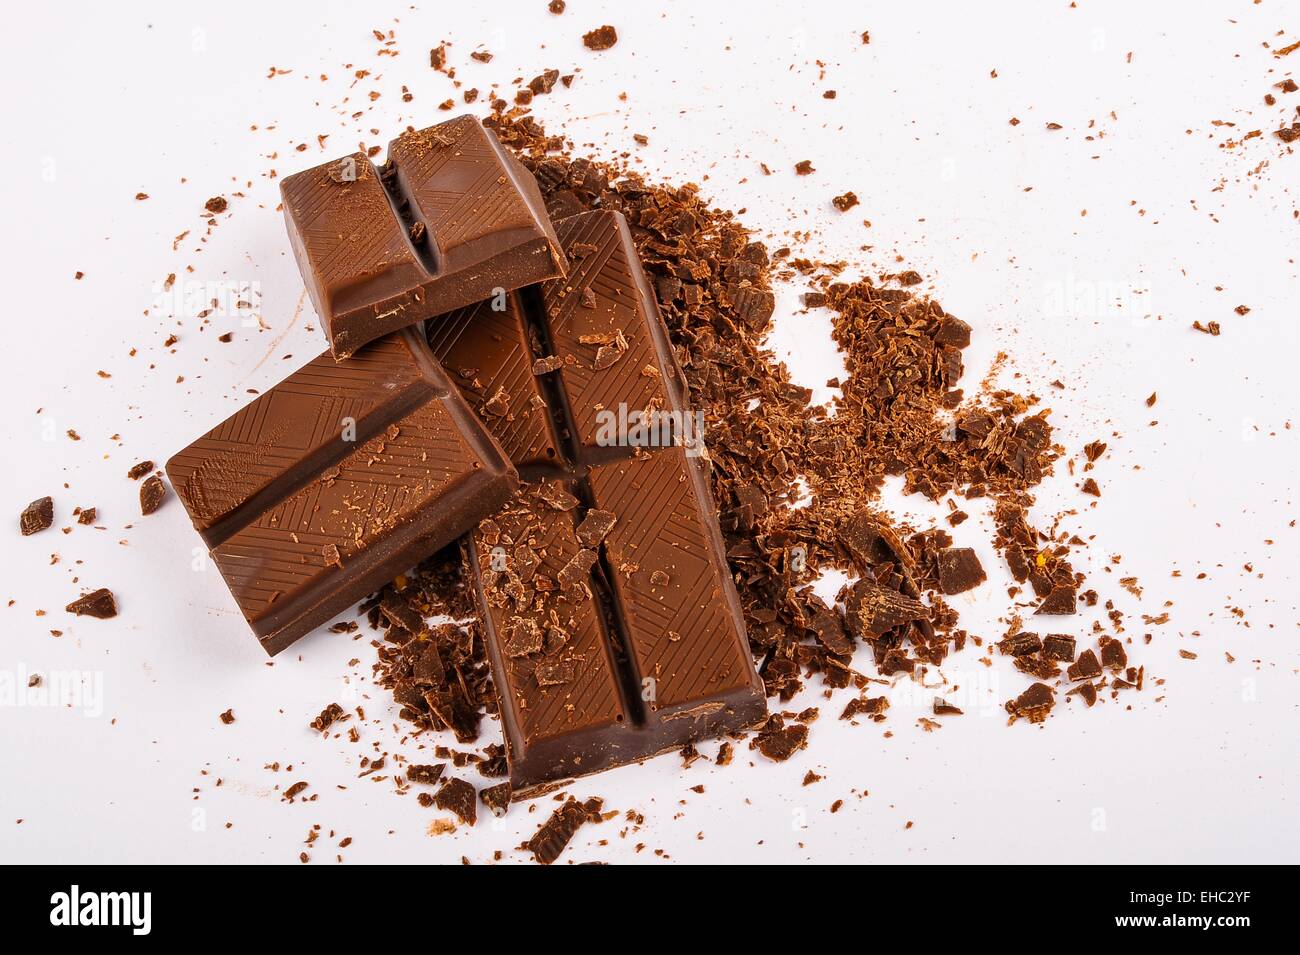 Raw dark chocolate bars on white background Stock Photo